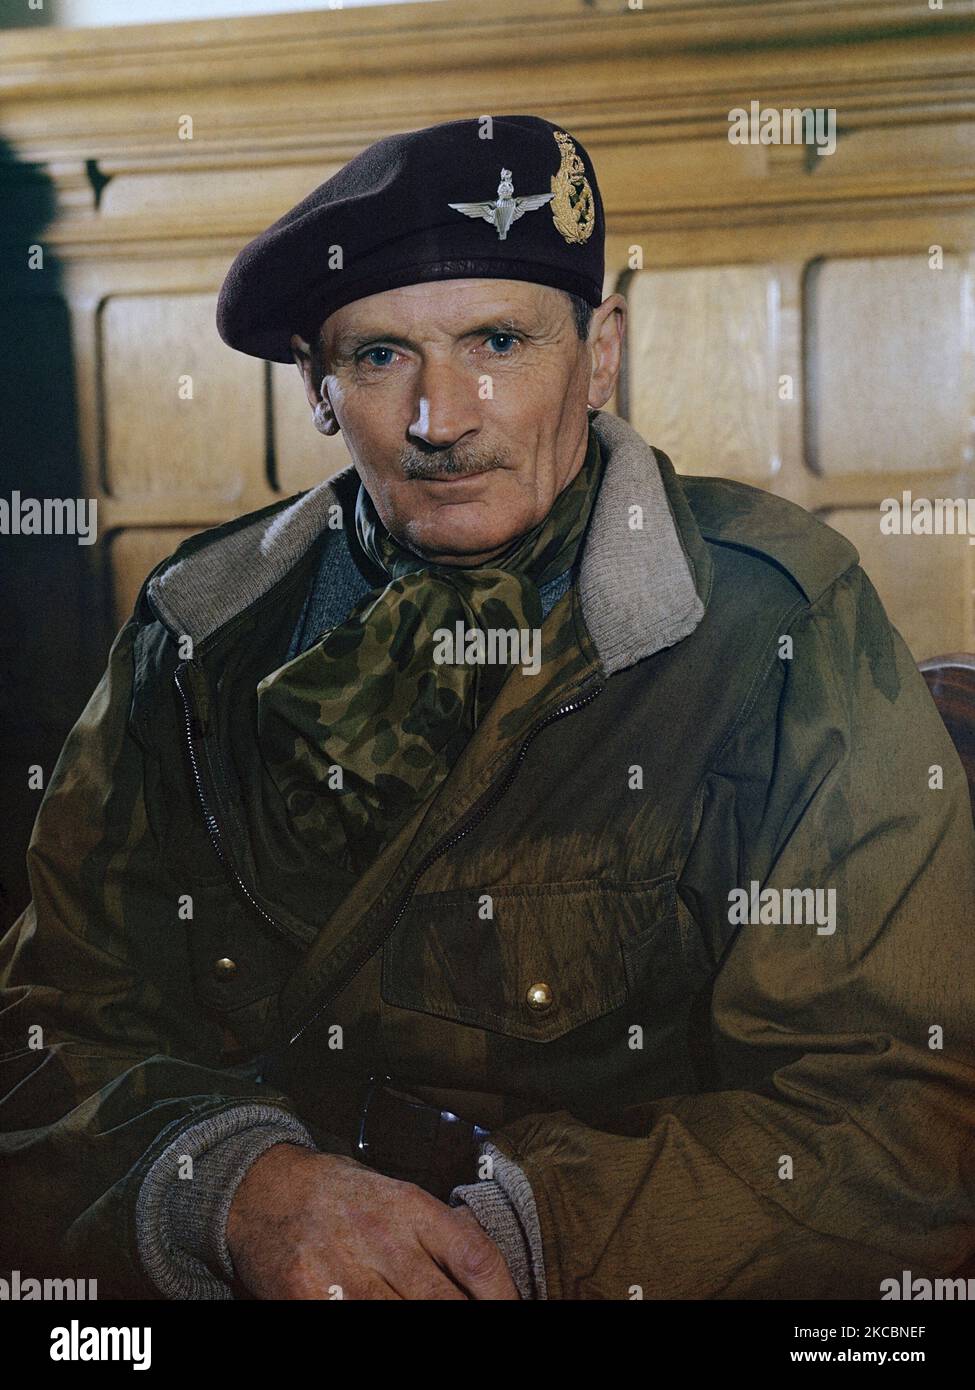 Porträt des Feldmarschalls Sir Bernard Montgomery von der britischen Armee während des Zweiten Weltkriegs, 1944. Stockfoto